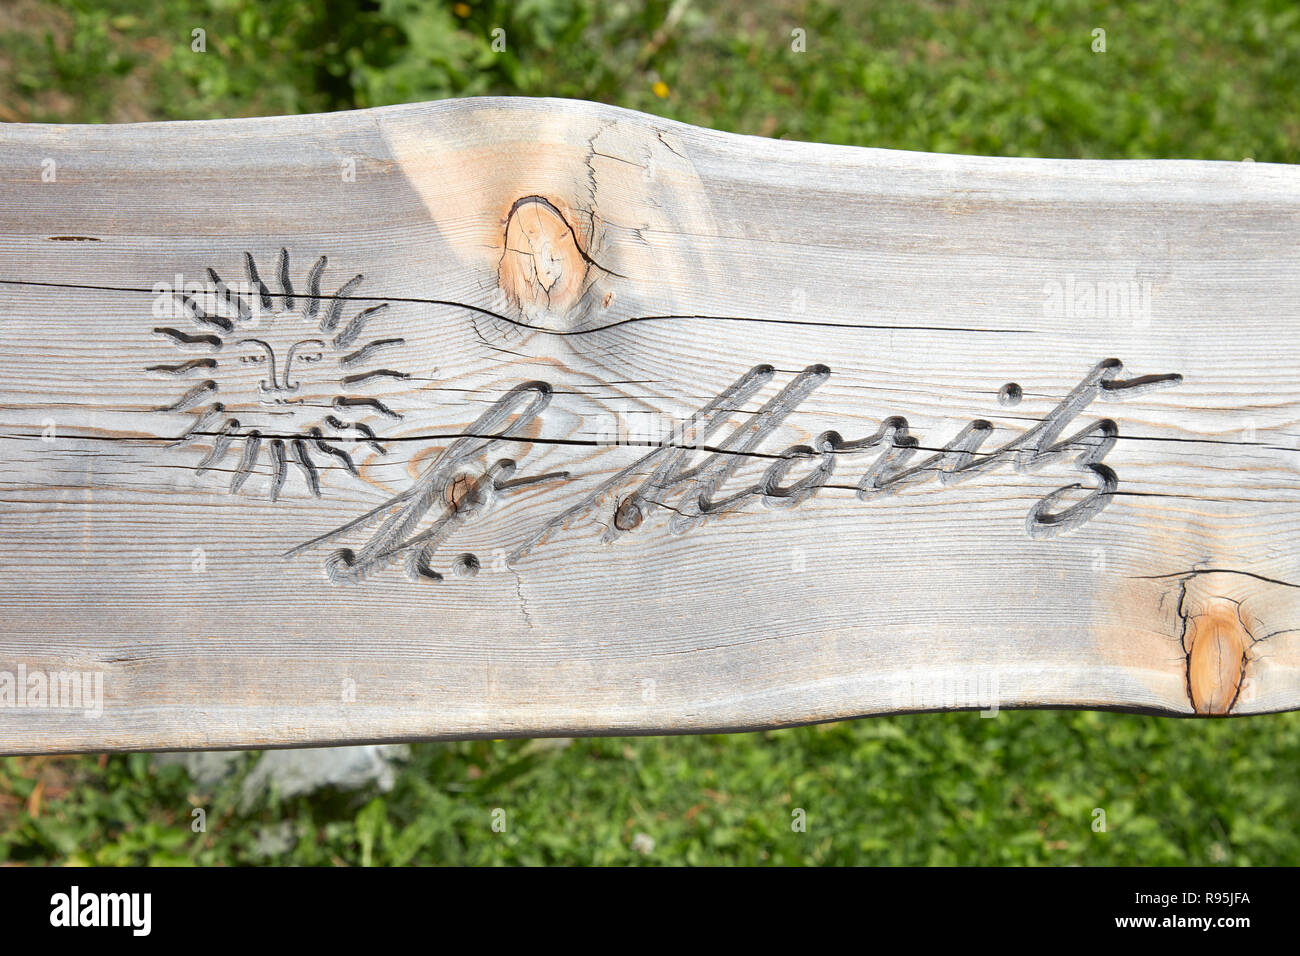 SANKT Moritz, Suiza - Agosto 16, 2018: la ciudad con el logotipo de Sun tallada en banco de madera plank en un día soleado de verano en Sankt Moritz, Suiza Foto de stock